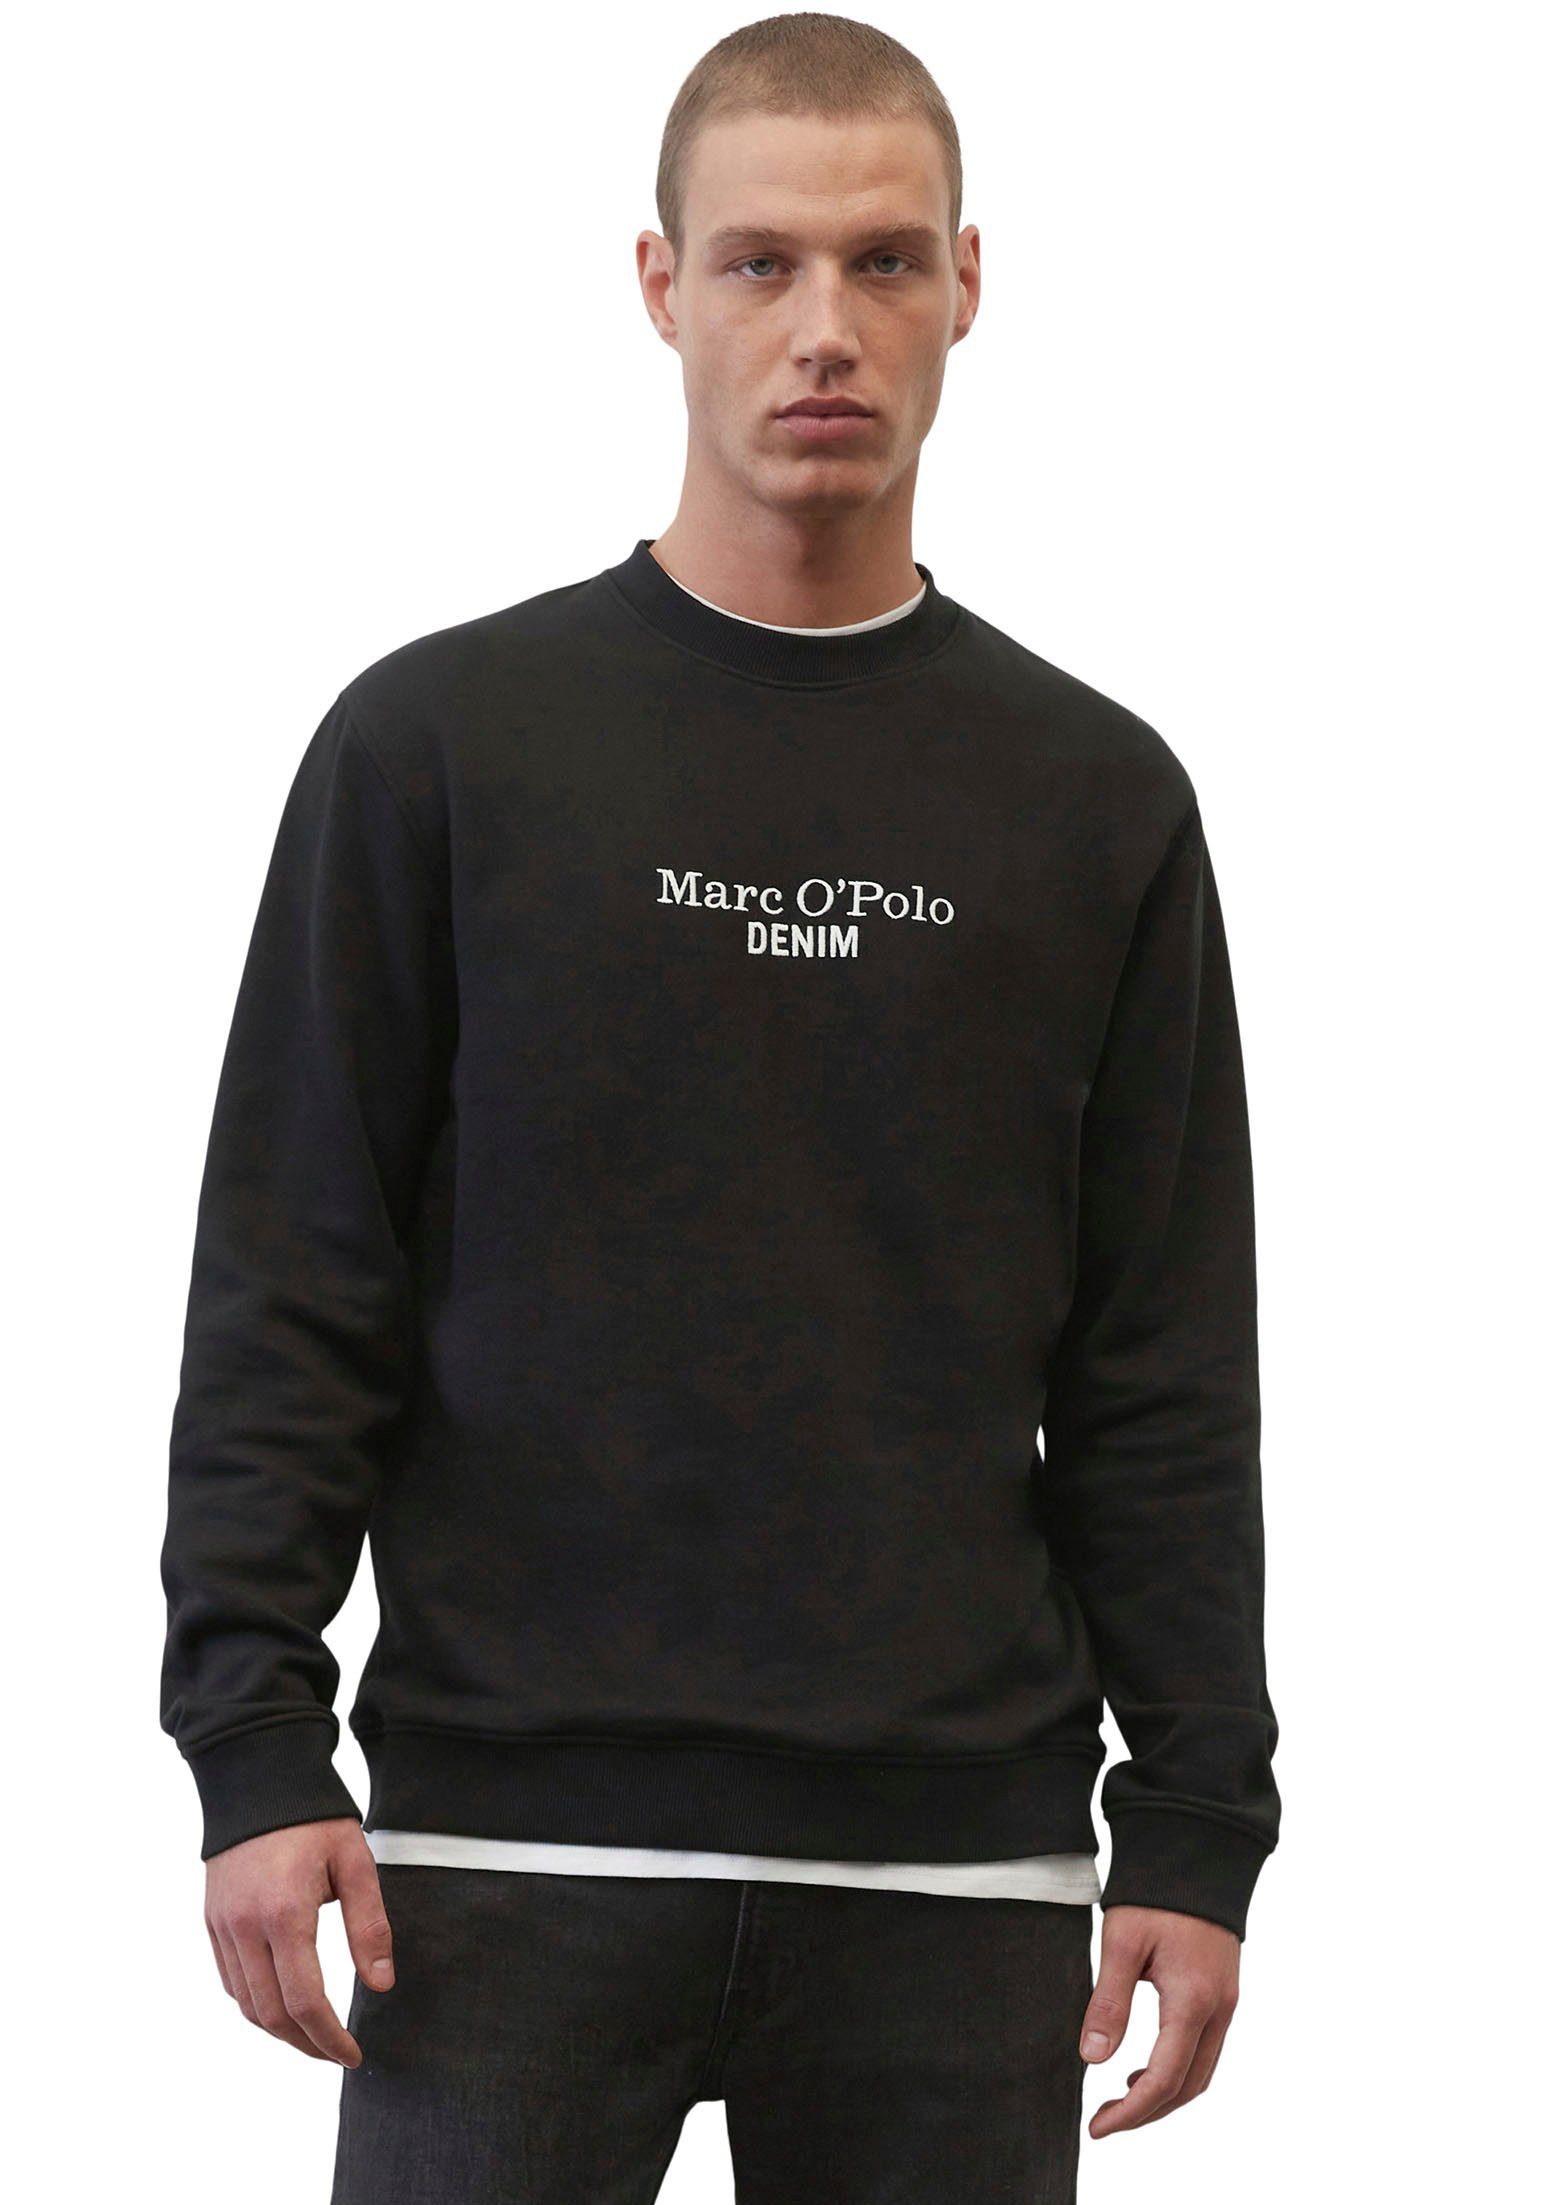 mit DENIM O'Polo Marc schwarz Label-Stickerei vorne Sweatshirt großer